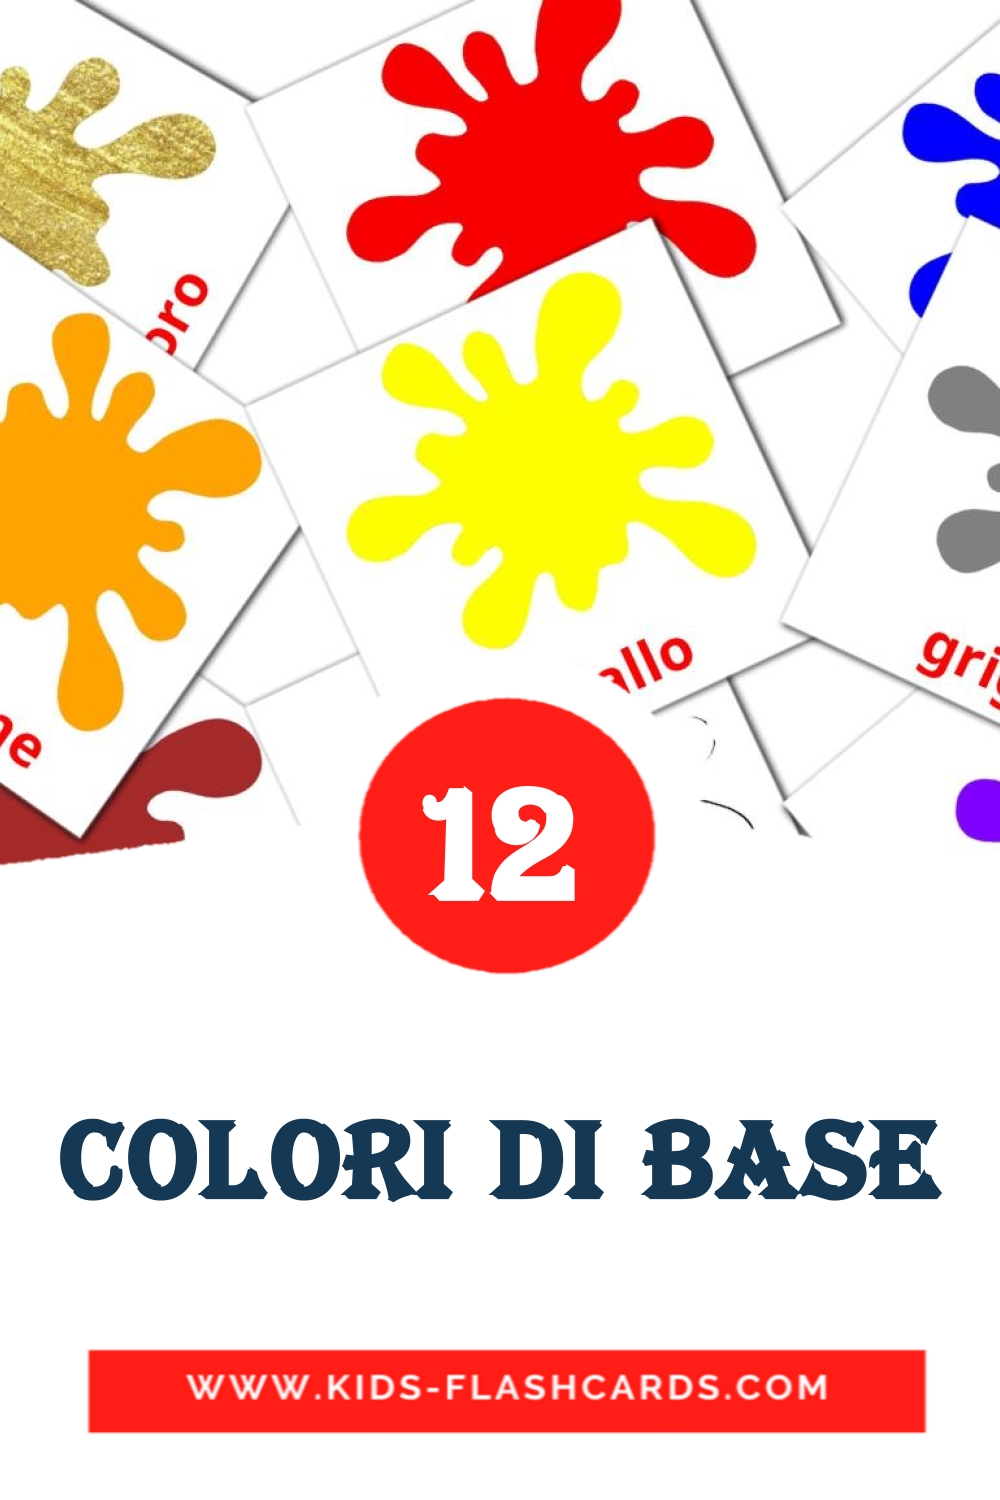 12 cartes illustrées de Colori di base pour la maternelle en italien